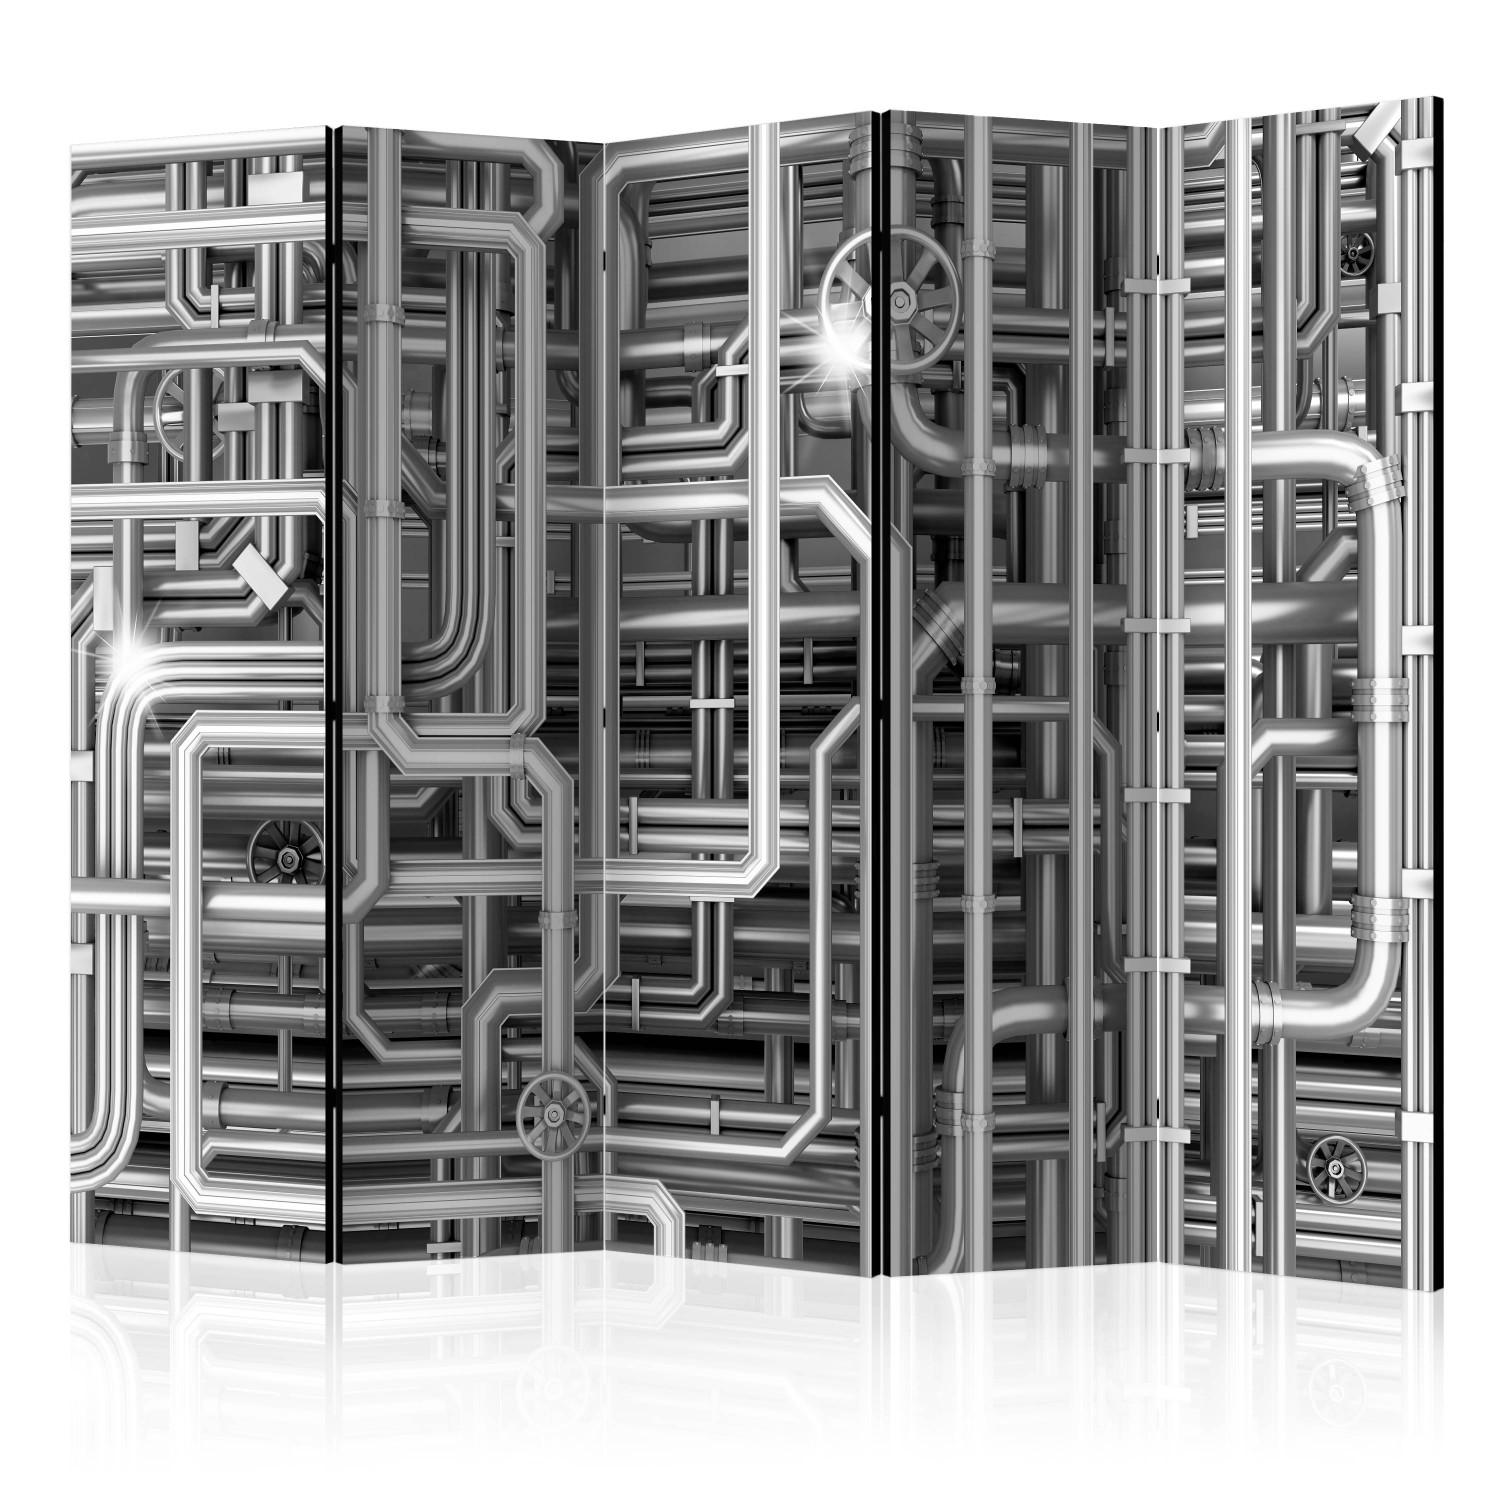 Biombo Urban Labyrinth II - composición abstracta de tubos de metal gris